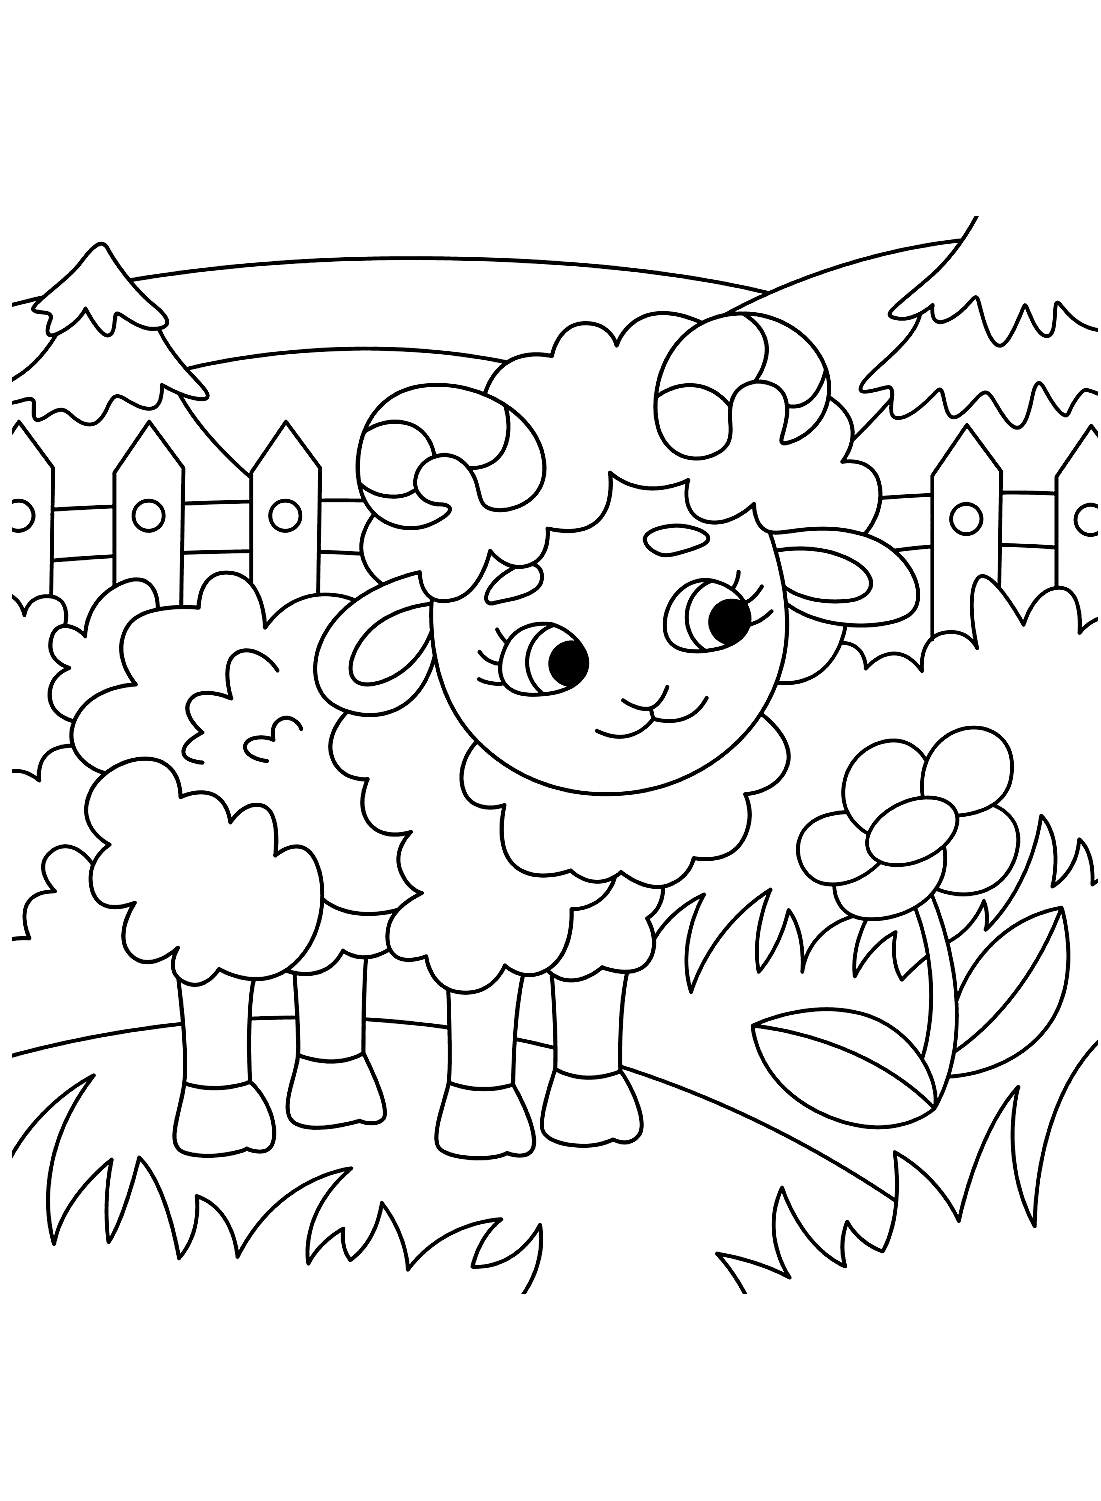 Página para colorir de ovelhas no jardim from Sheep